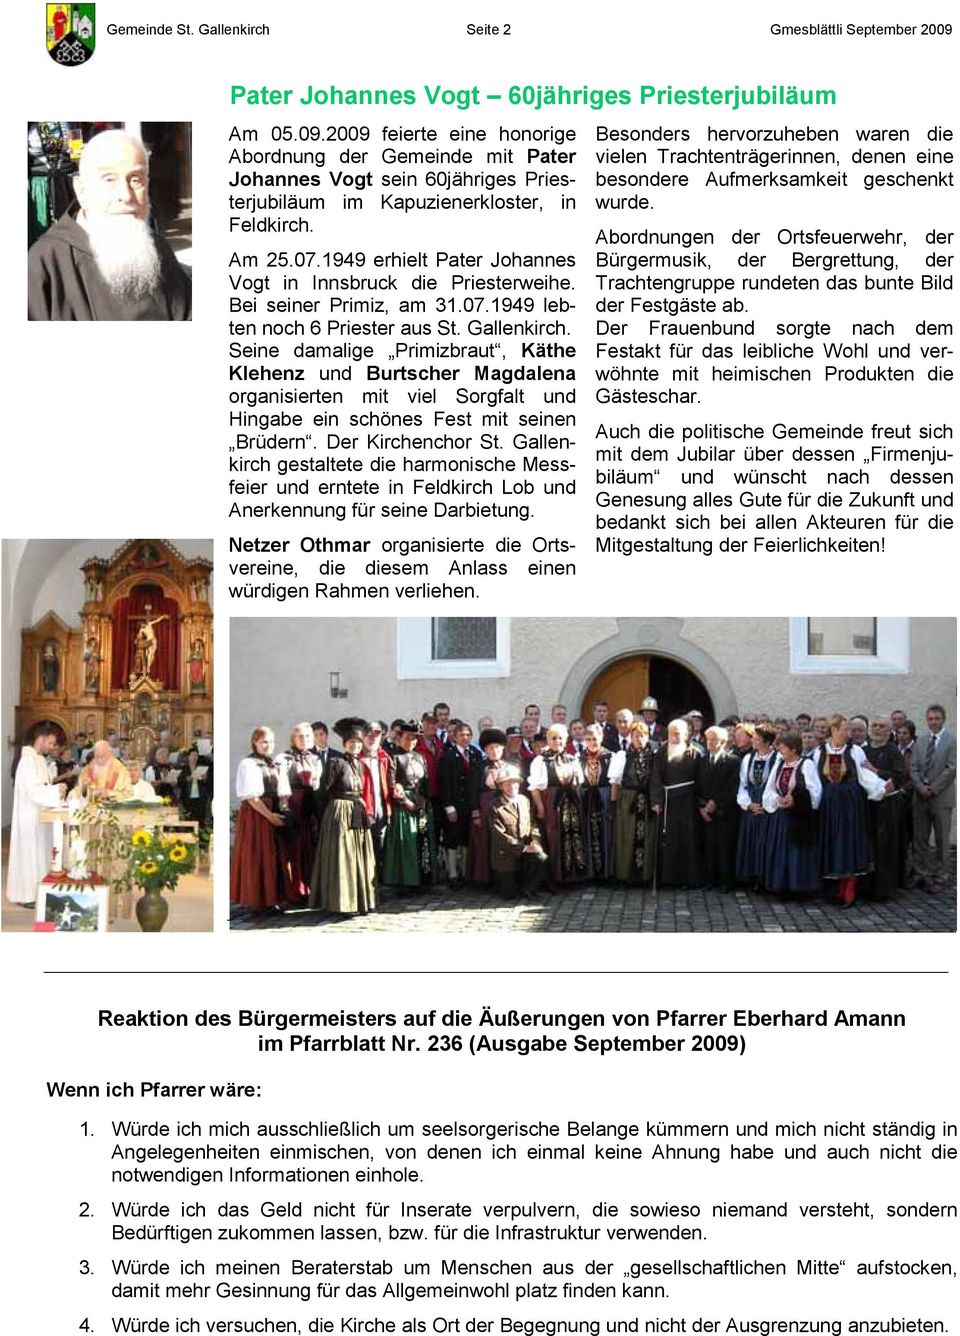 Am 25.07.1949 erhielt Pater Johannes Vogt in Innsbruck die Priesterweihe. Bei seiner Primiz, am 31.07.1949 lebten noch 6 Priester aus St. Gallenkirch.